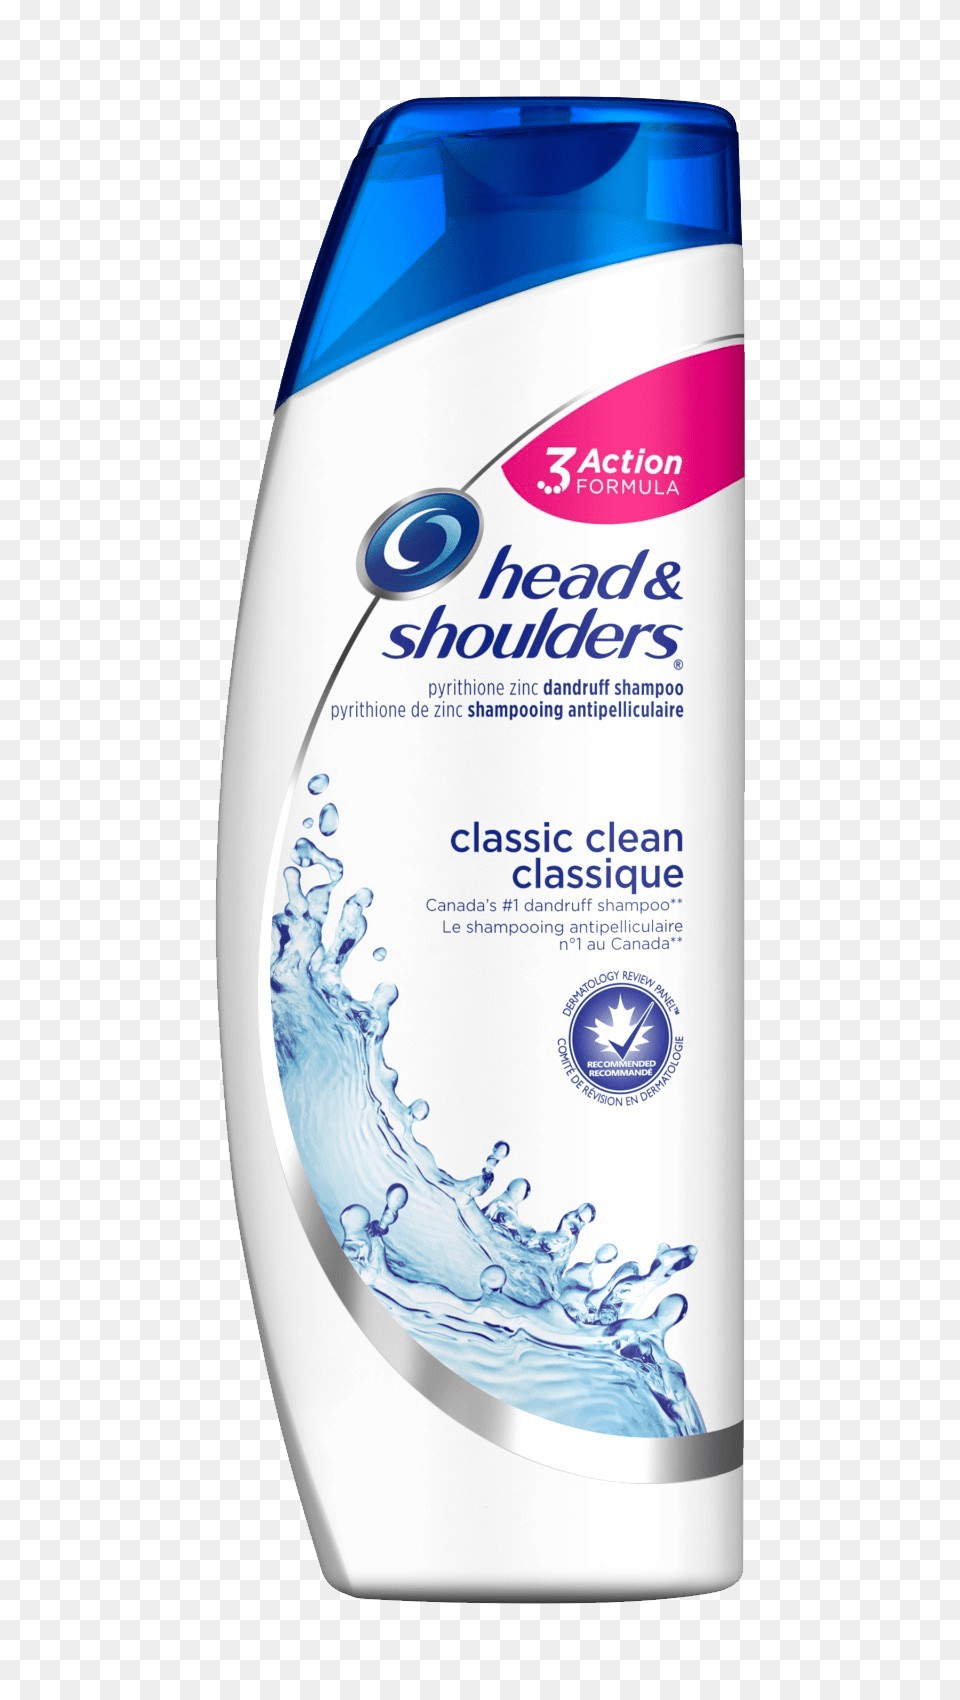 Shampoo, Bottle, Shaker Free Png Download